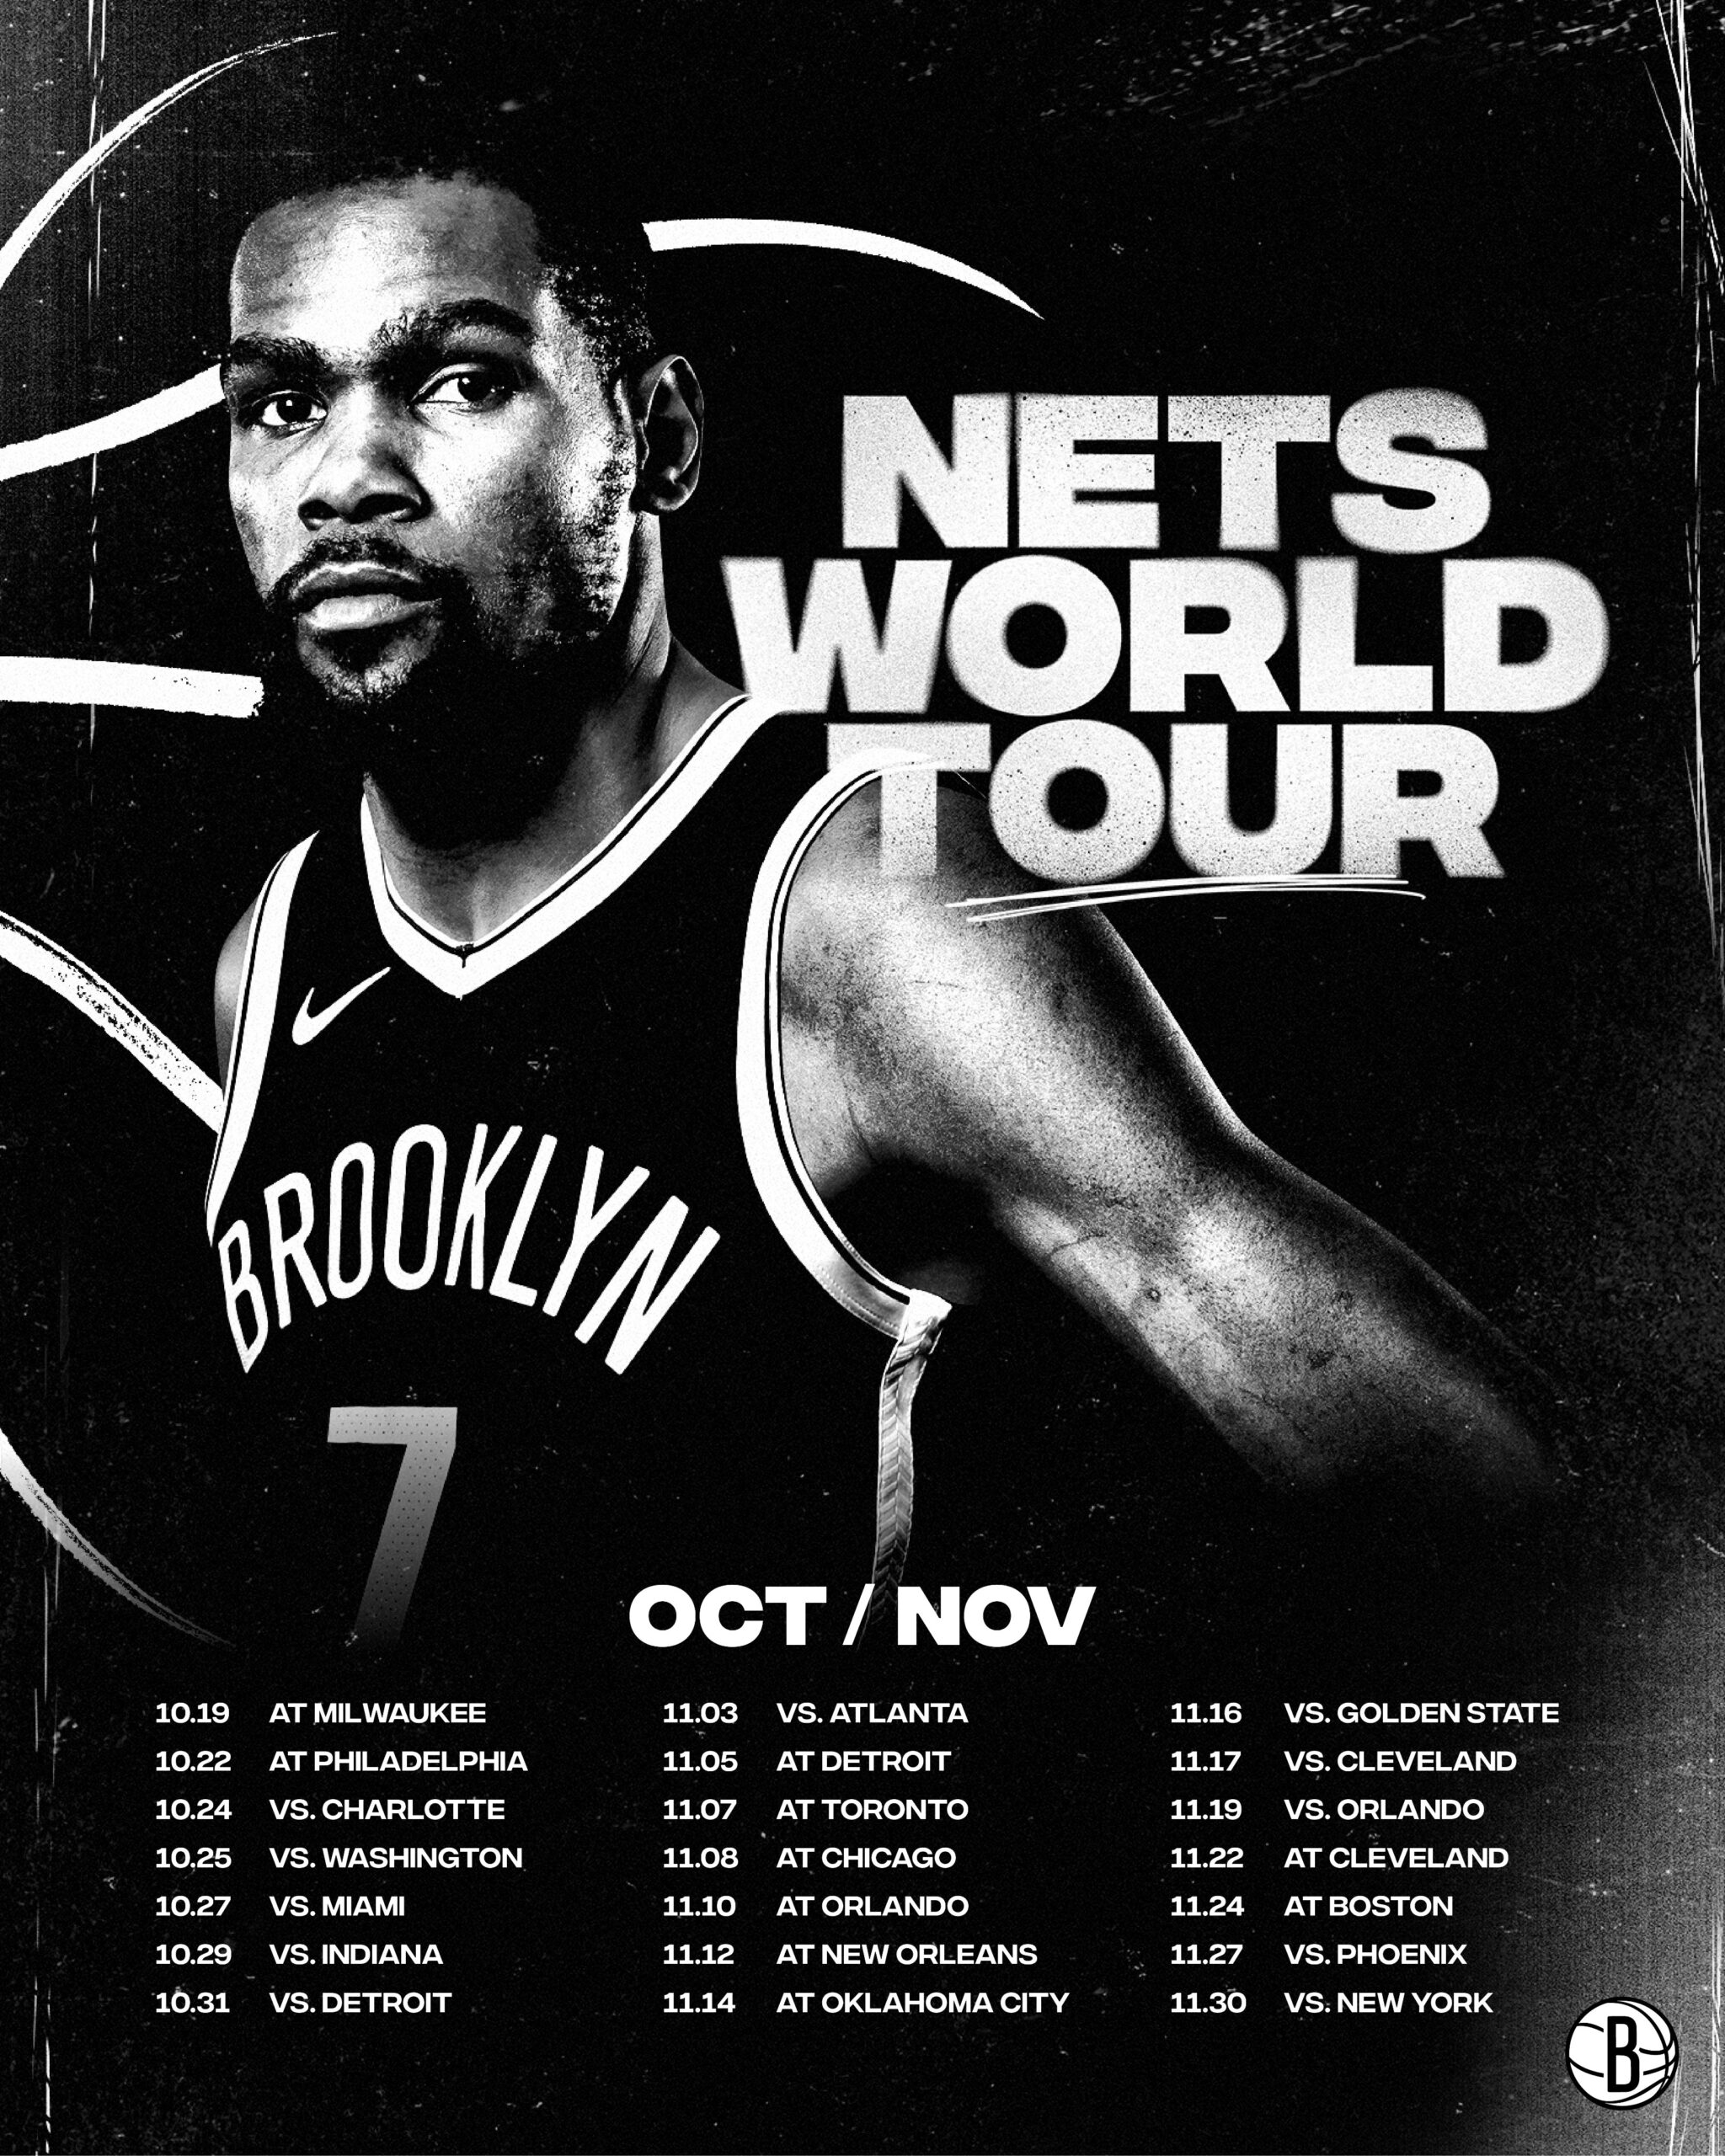 Nets schedule October- November